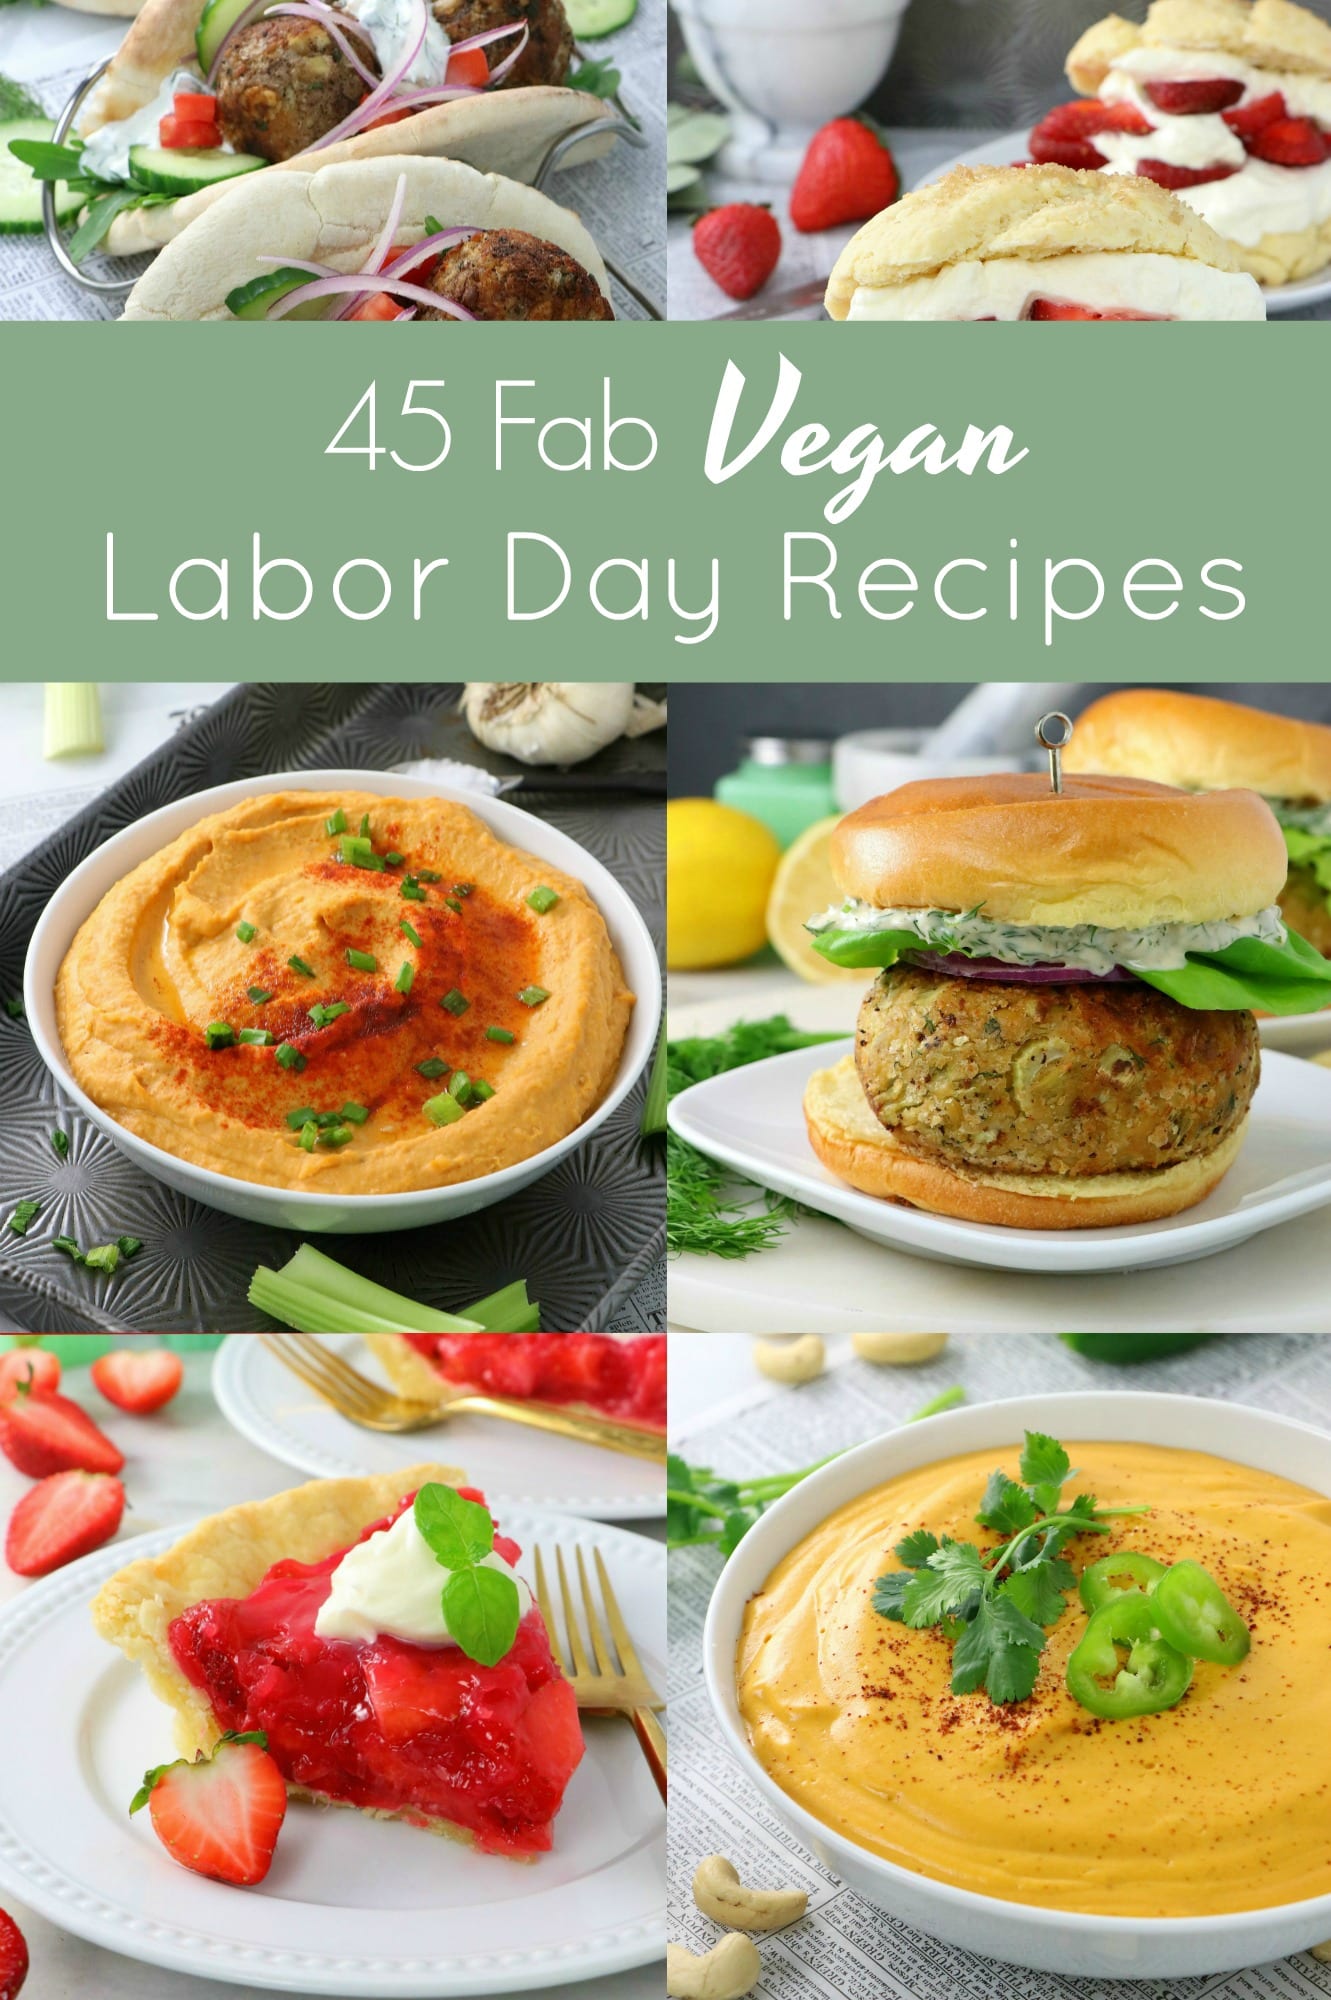 45 Fab Vegan Labor Day Recipes